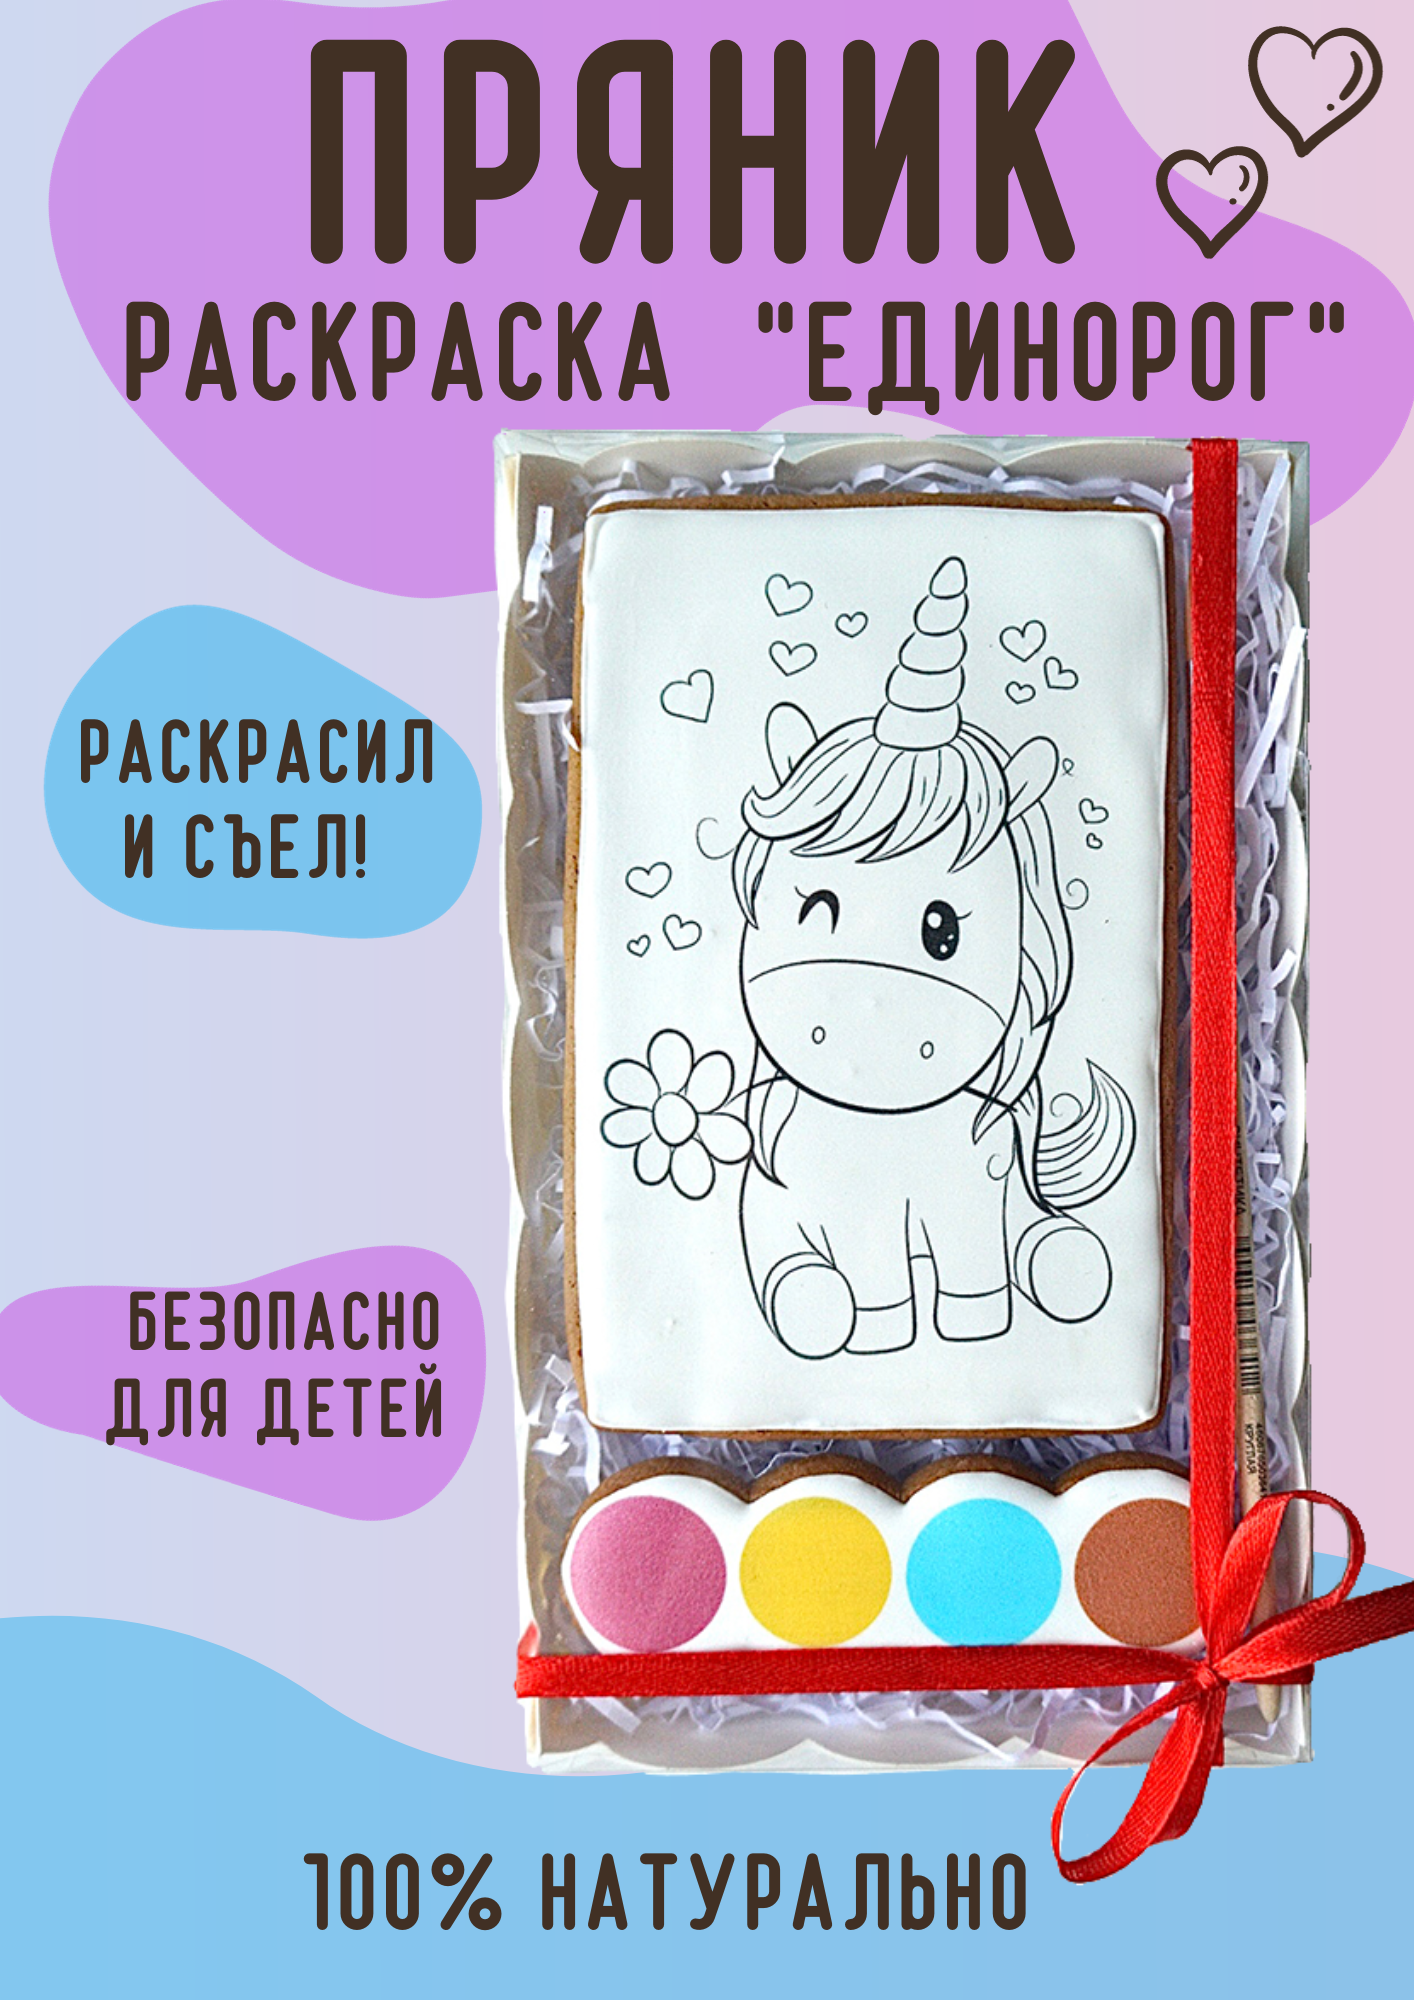 Имбирные пряники Раскраска Единорога для детей POEDASHKA